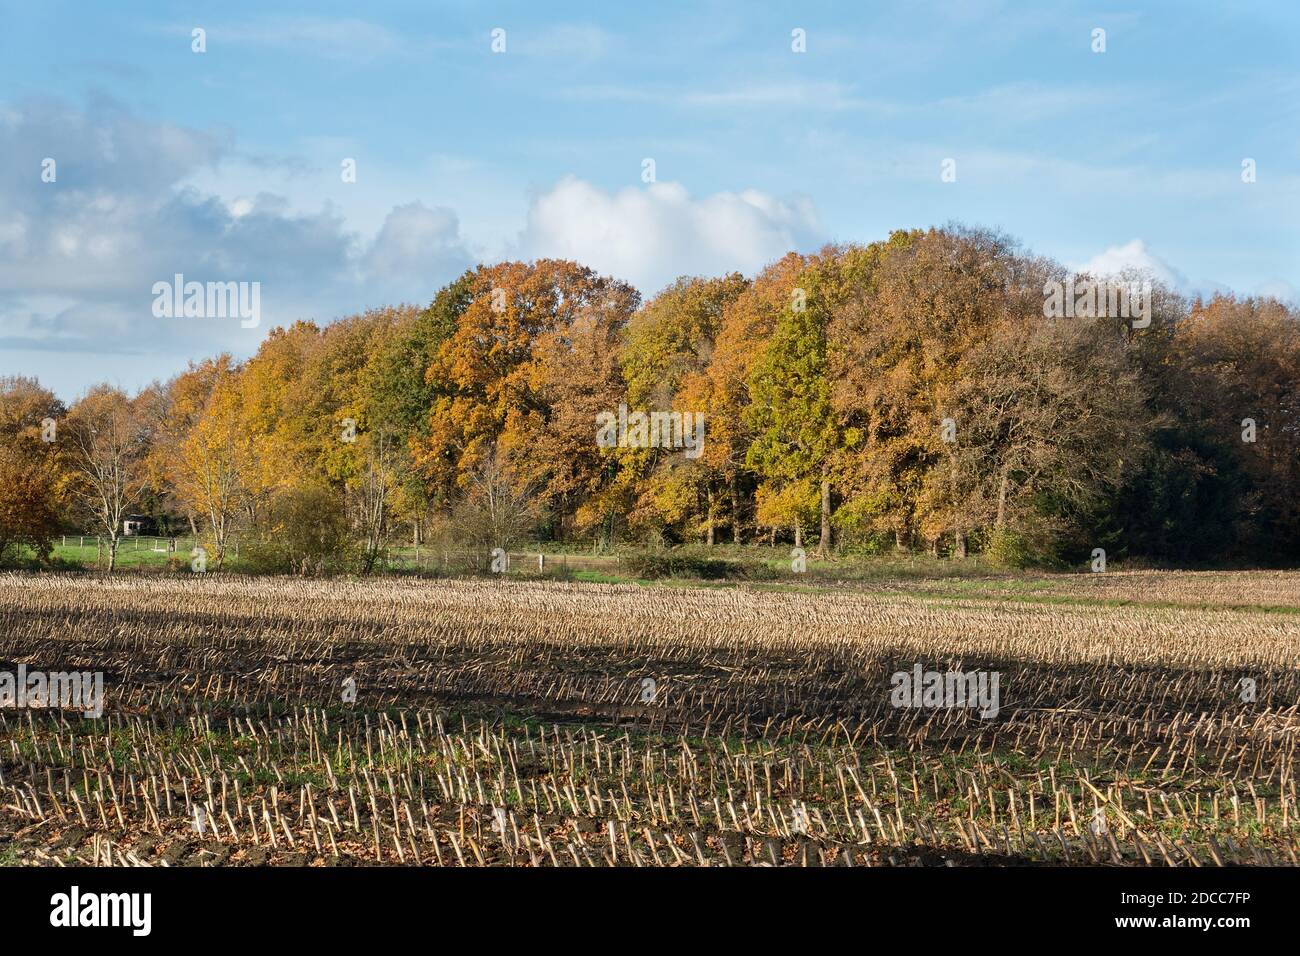 Feld im Herbst mit Maisstielchen nach der Ernte, im Hintergrund ein Wald in Herbstfarben Stockfoto